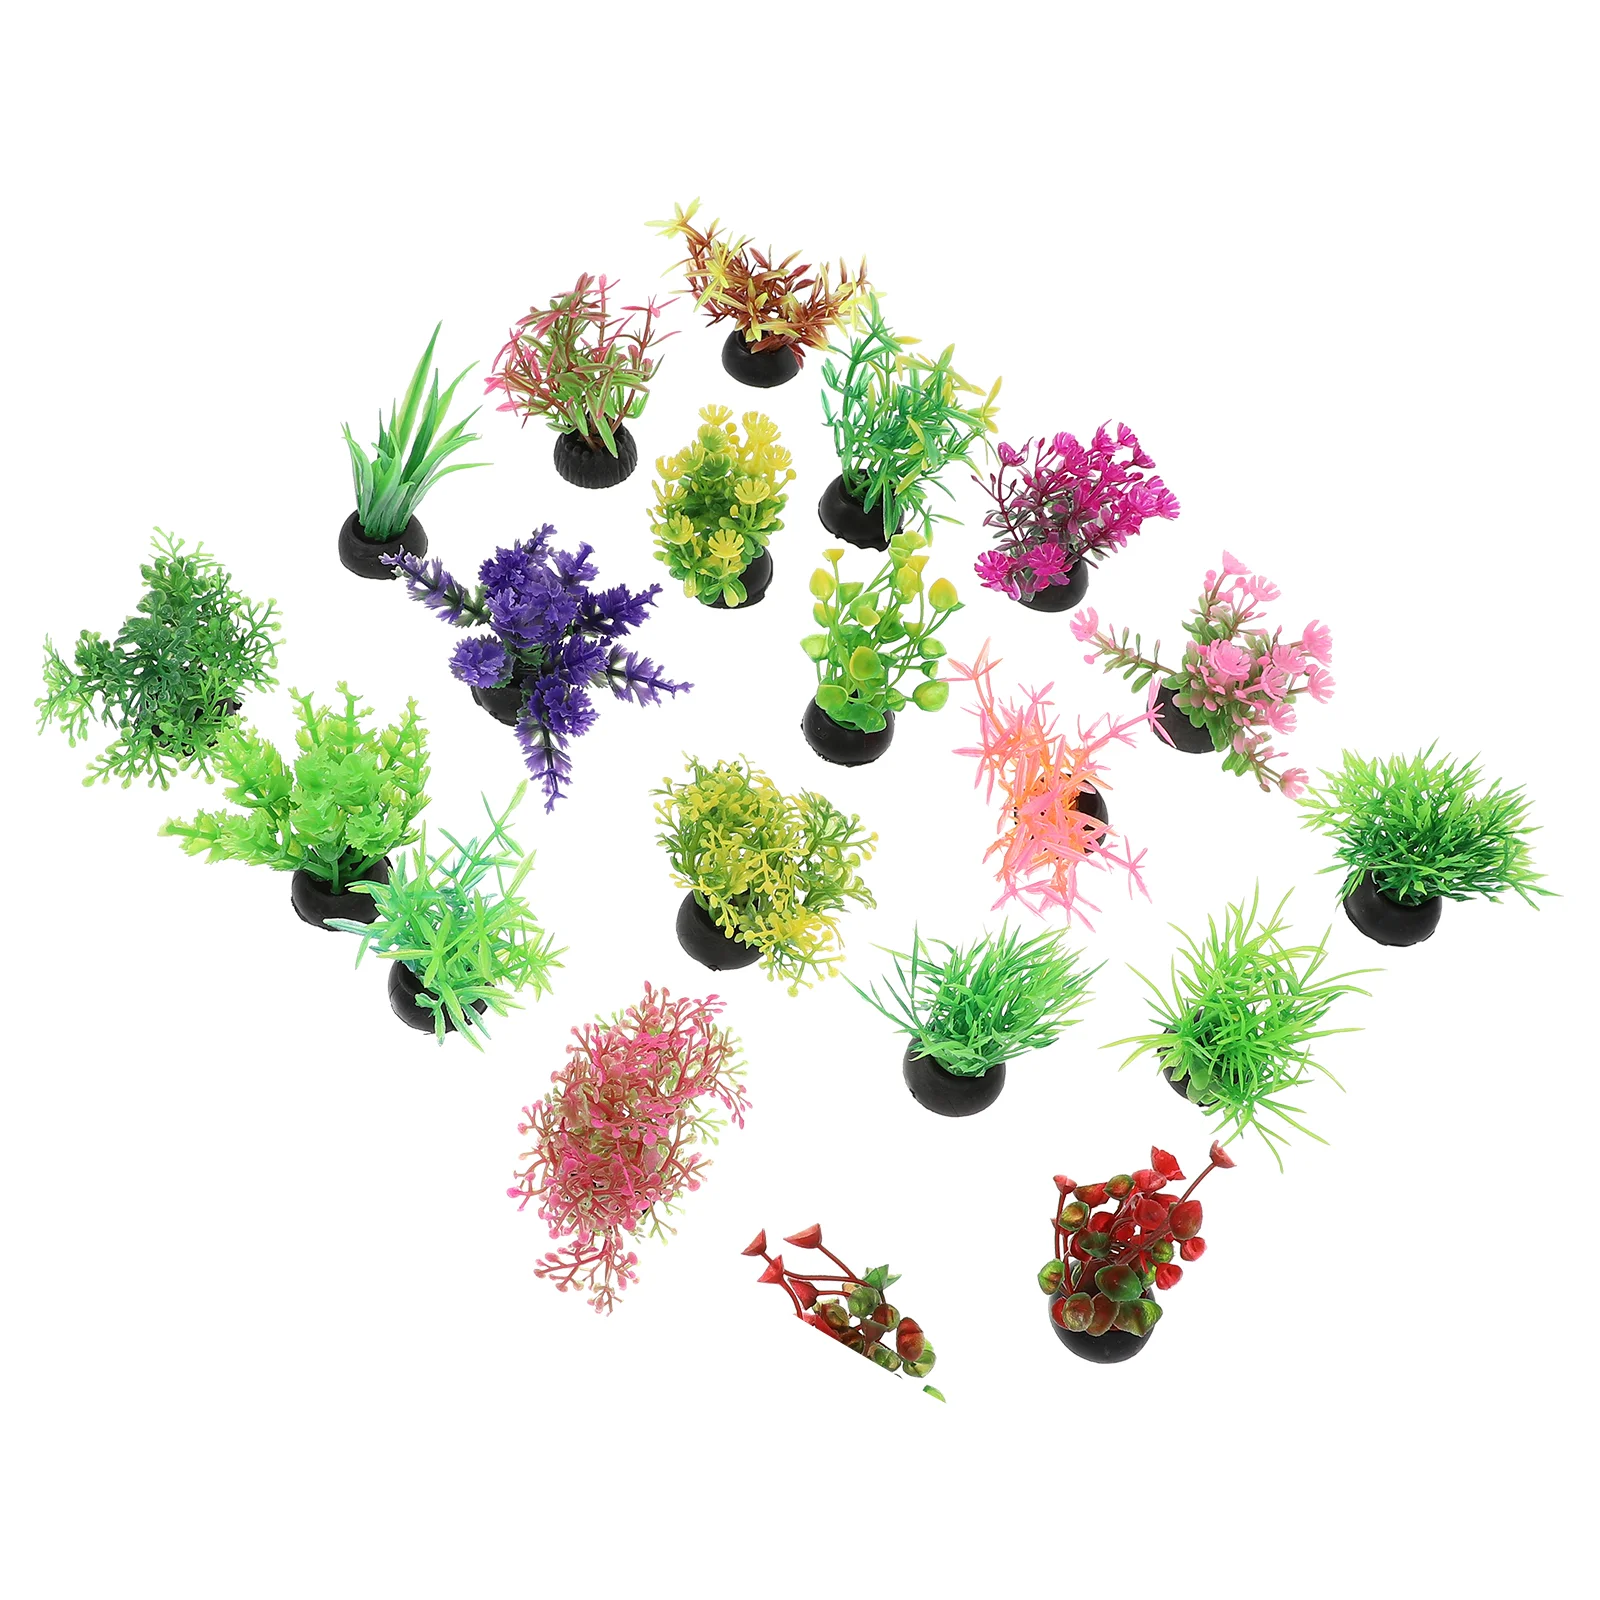 

20 Pcs Fish Tank Landscaping Water Plants Adornment Decor Artificial Plastic Aquatic Grass Decorative Decorations